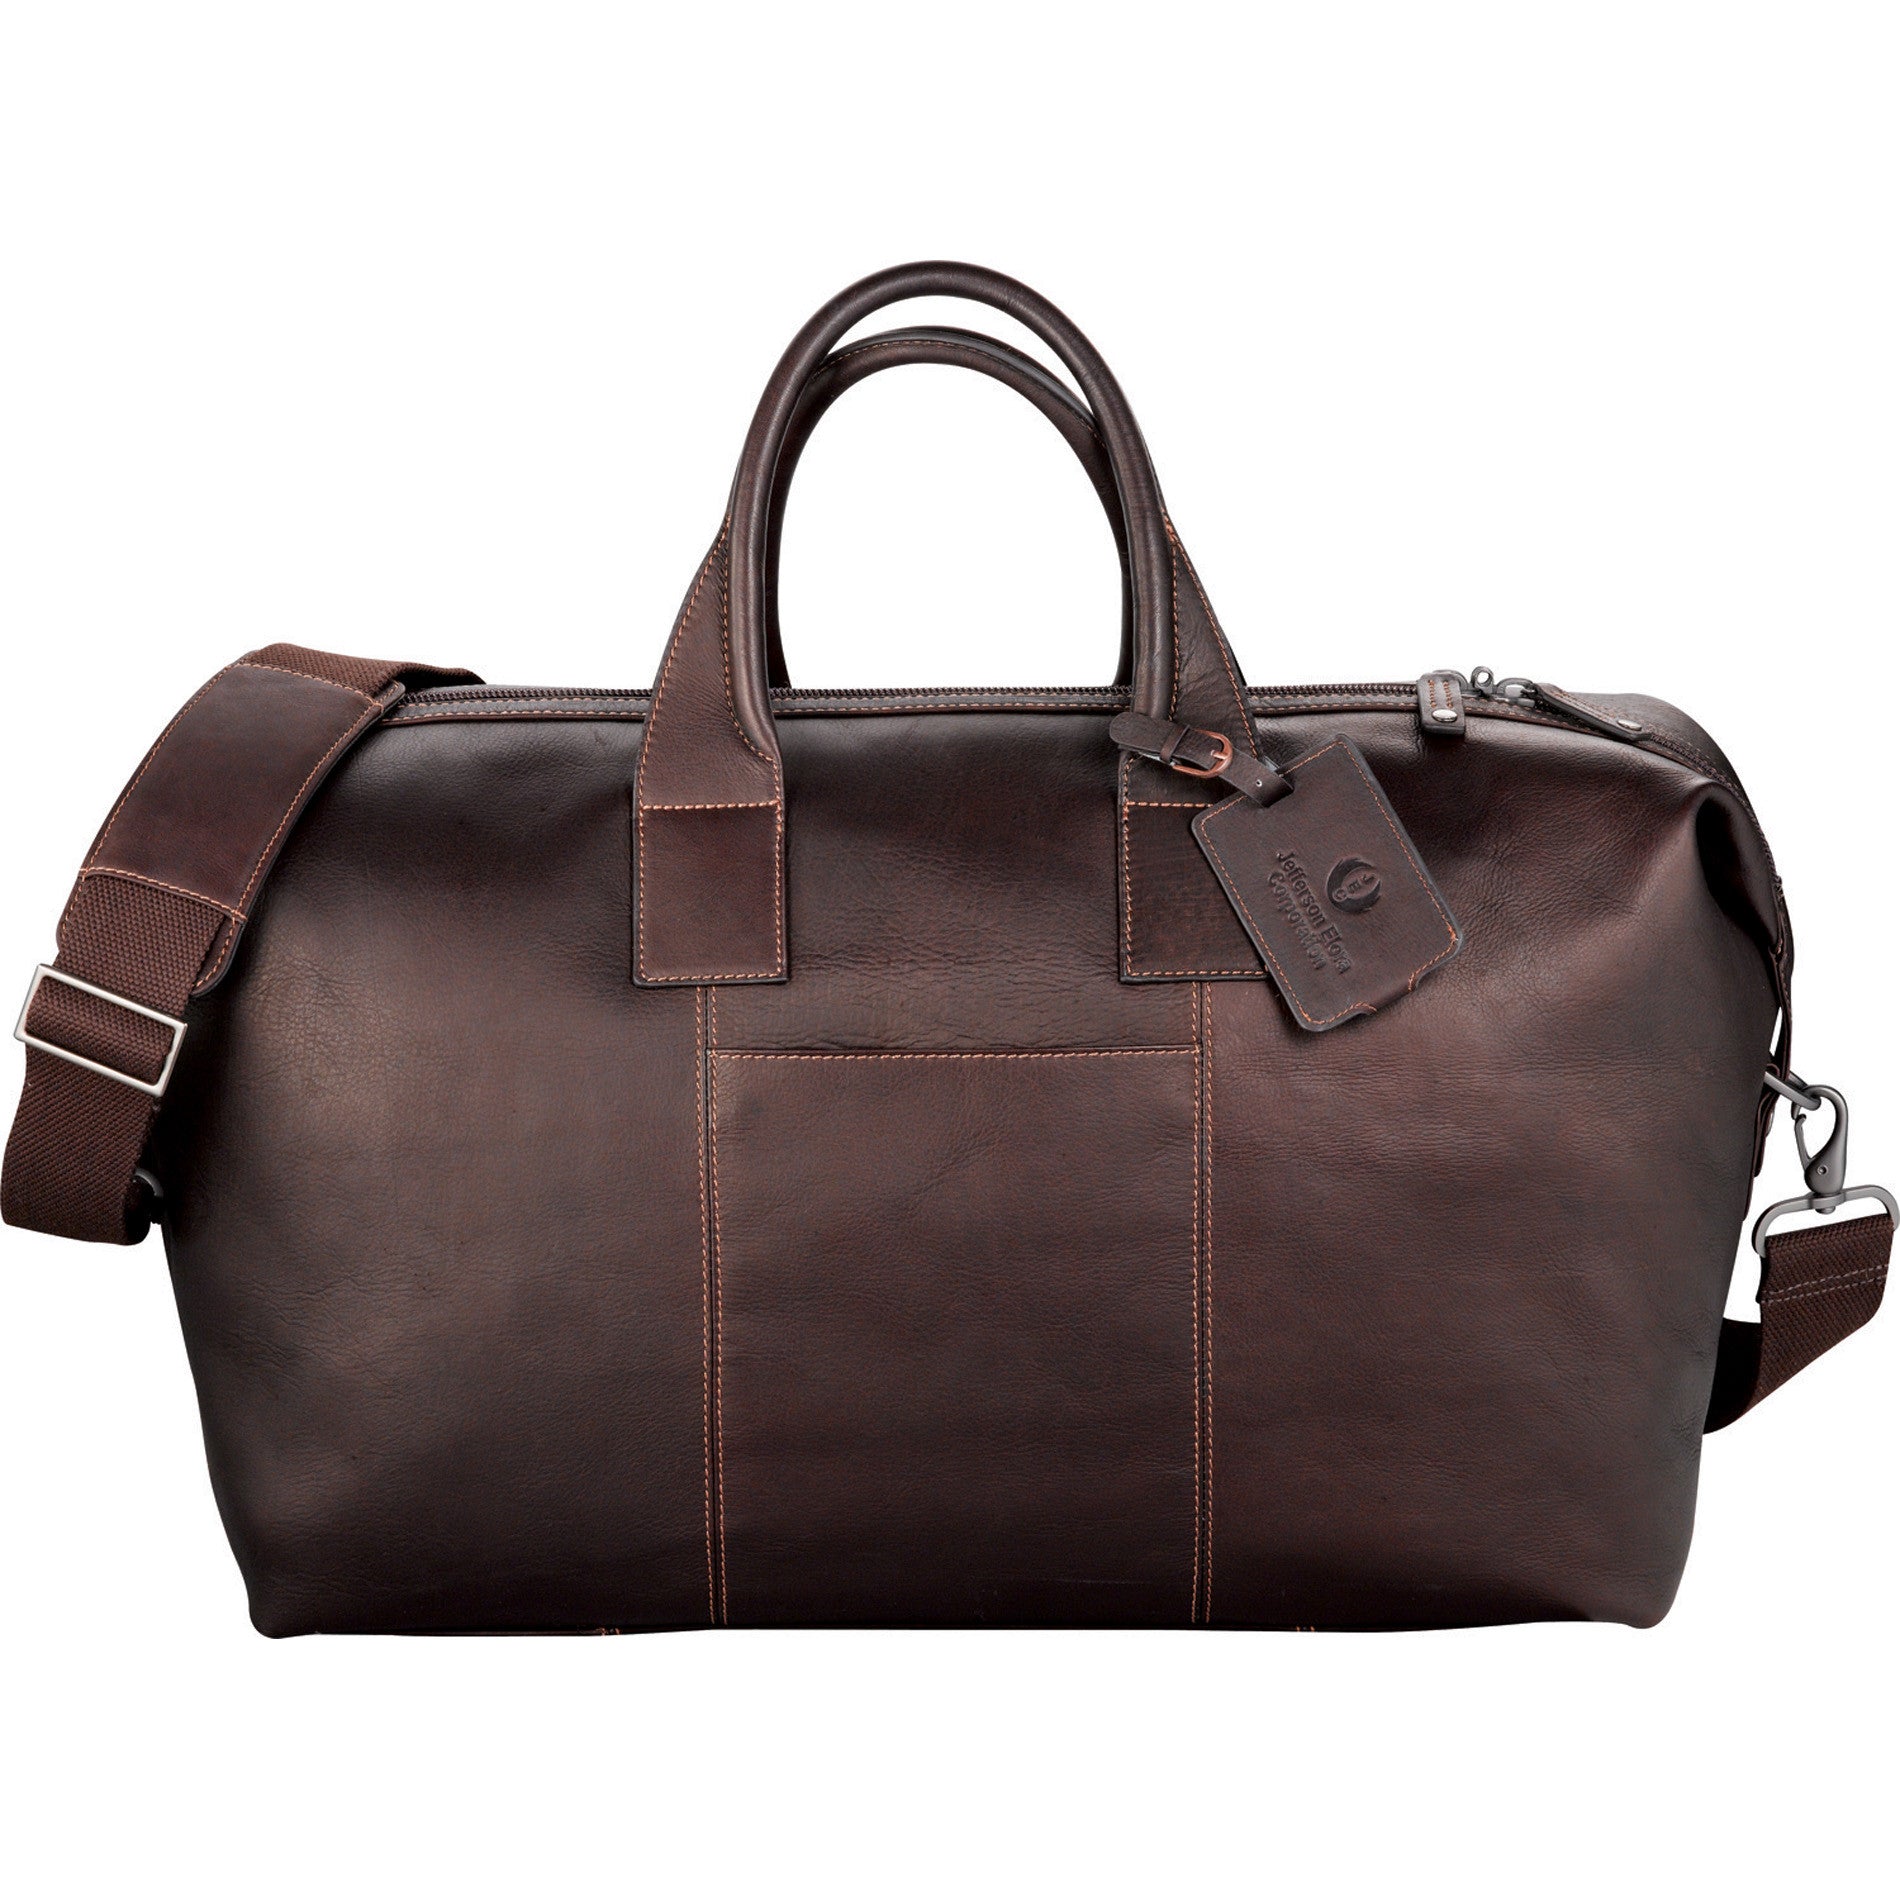 executive leather duffle bag